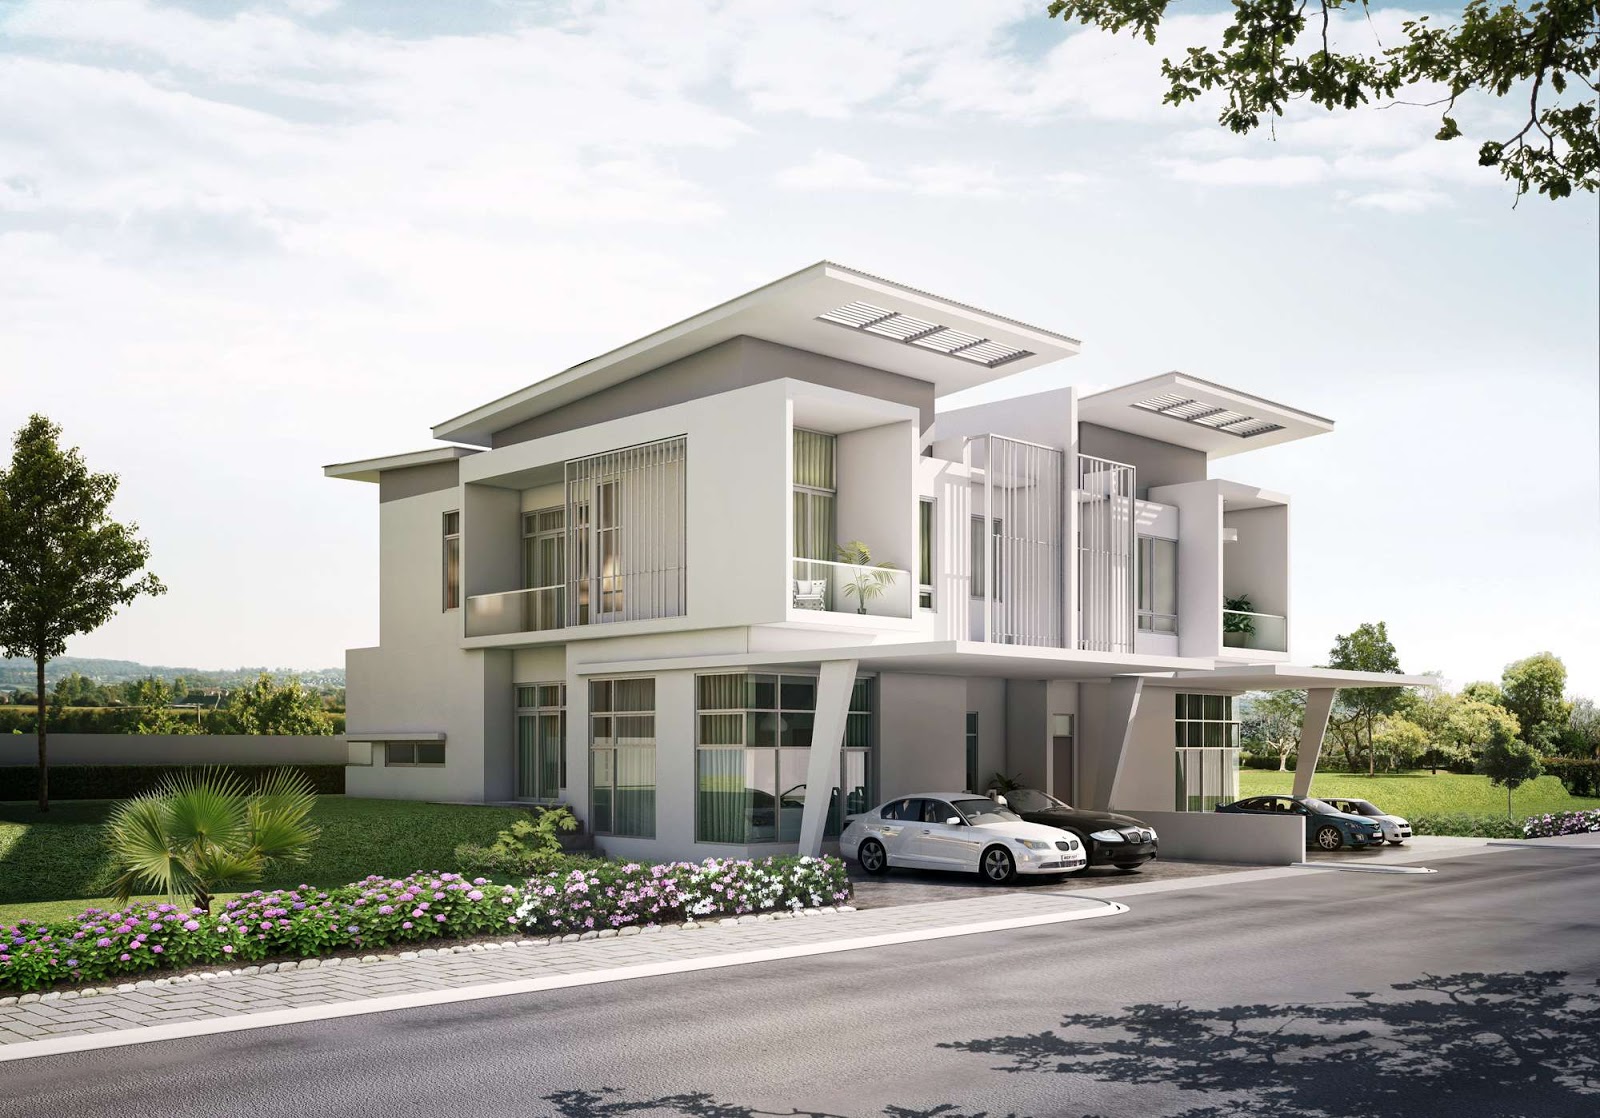 Singapore modern homes exterior designs.  Home Design